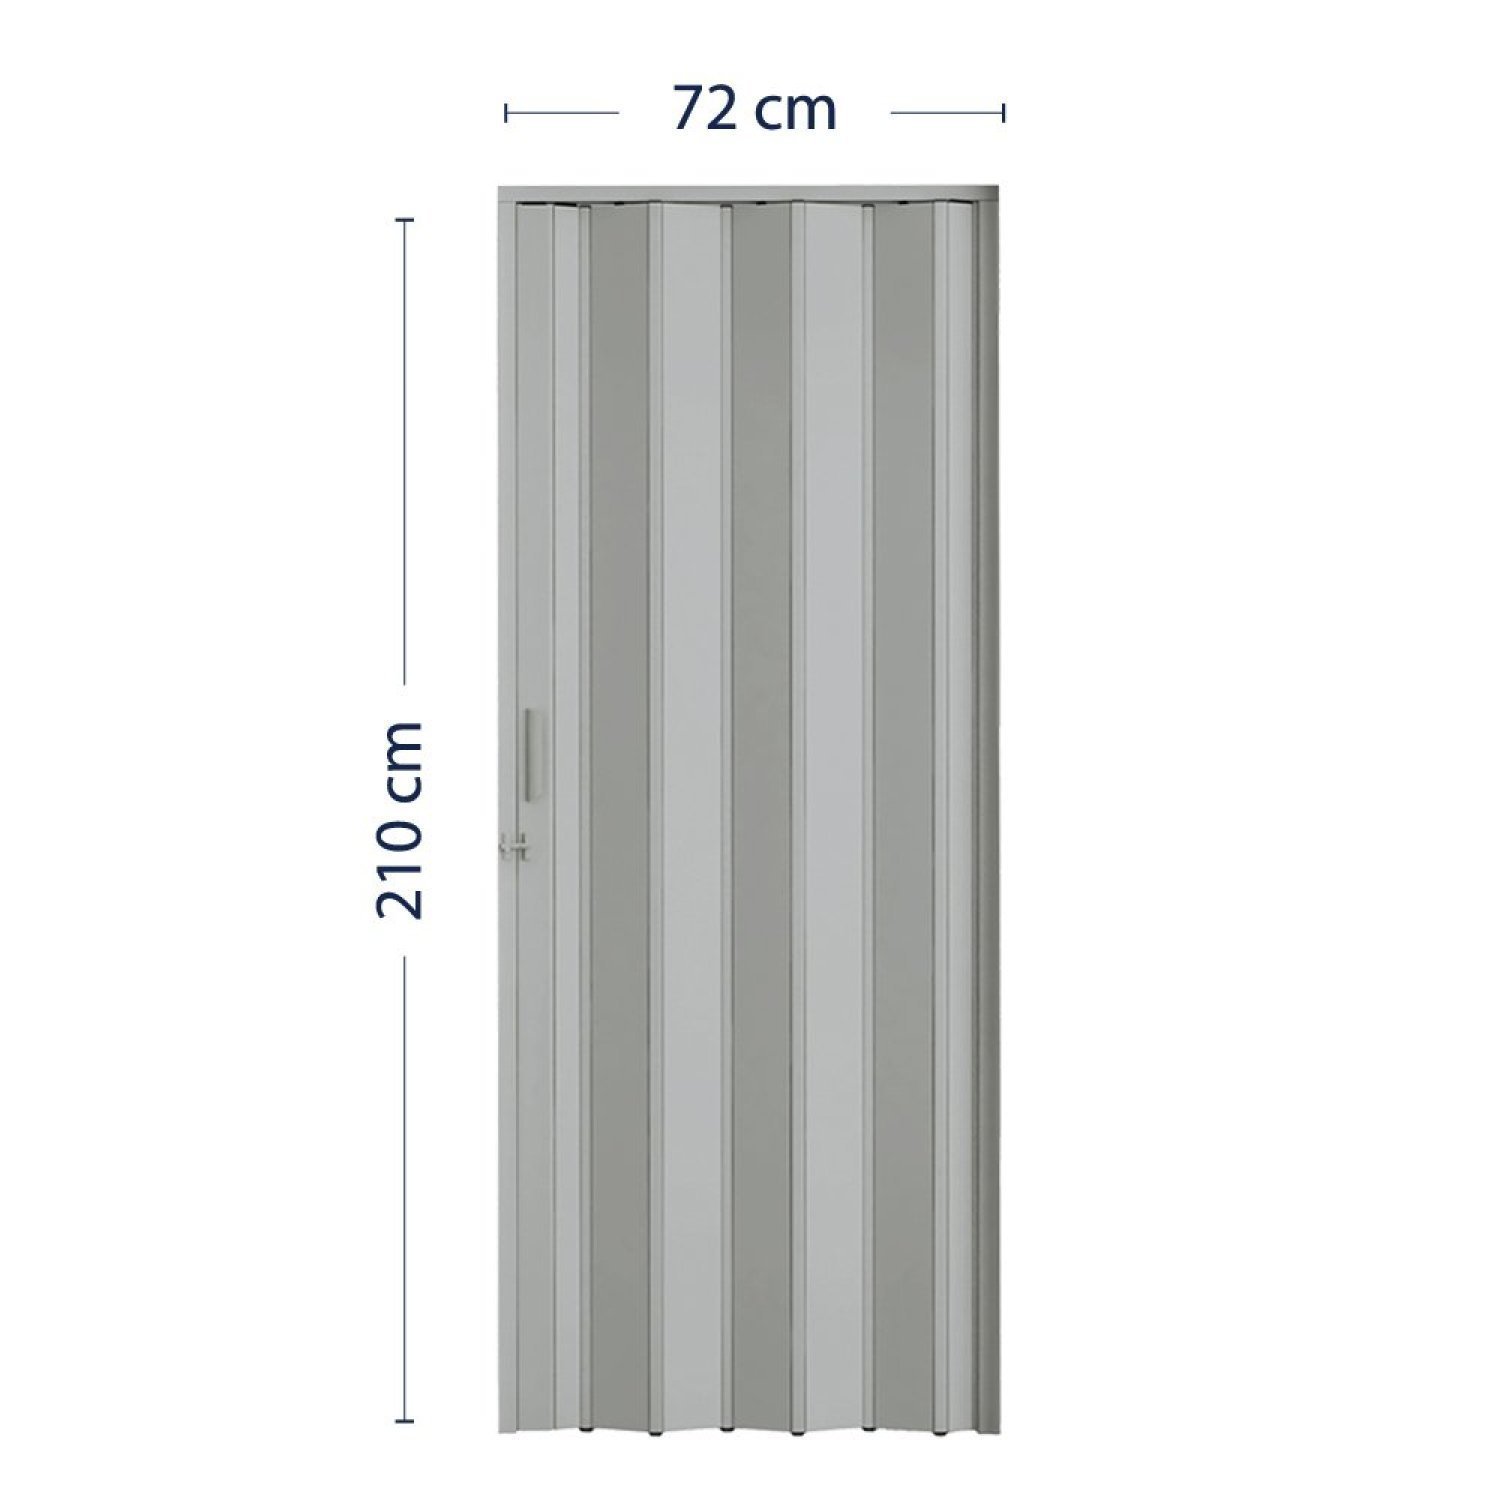 Porta Sanfonada de PVC 210x72cm Pronta BCF - 4